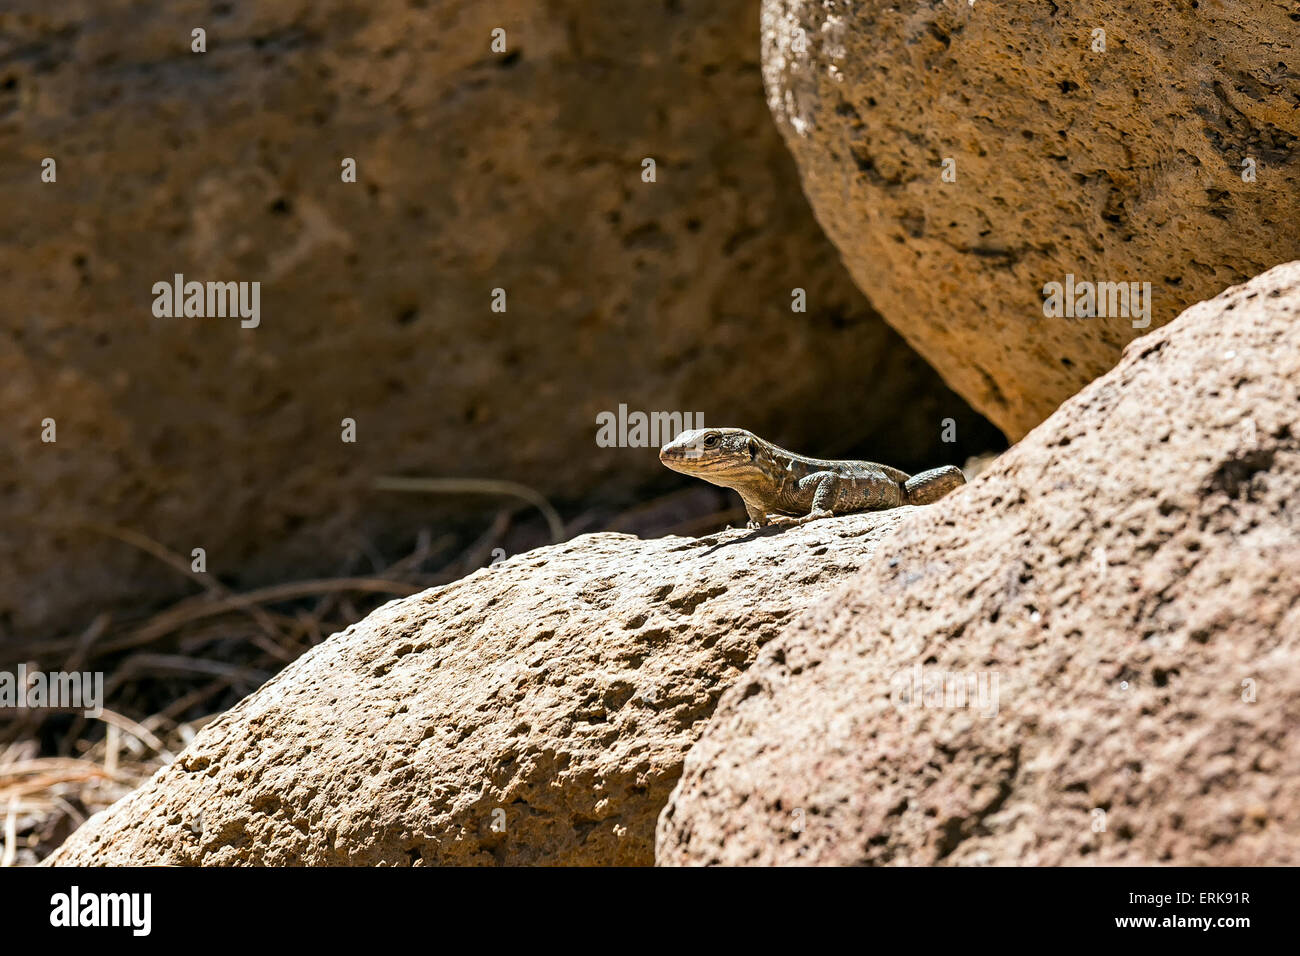 El lagarto o reptil lacertian sentado en piedra Foto de stock